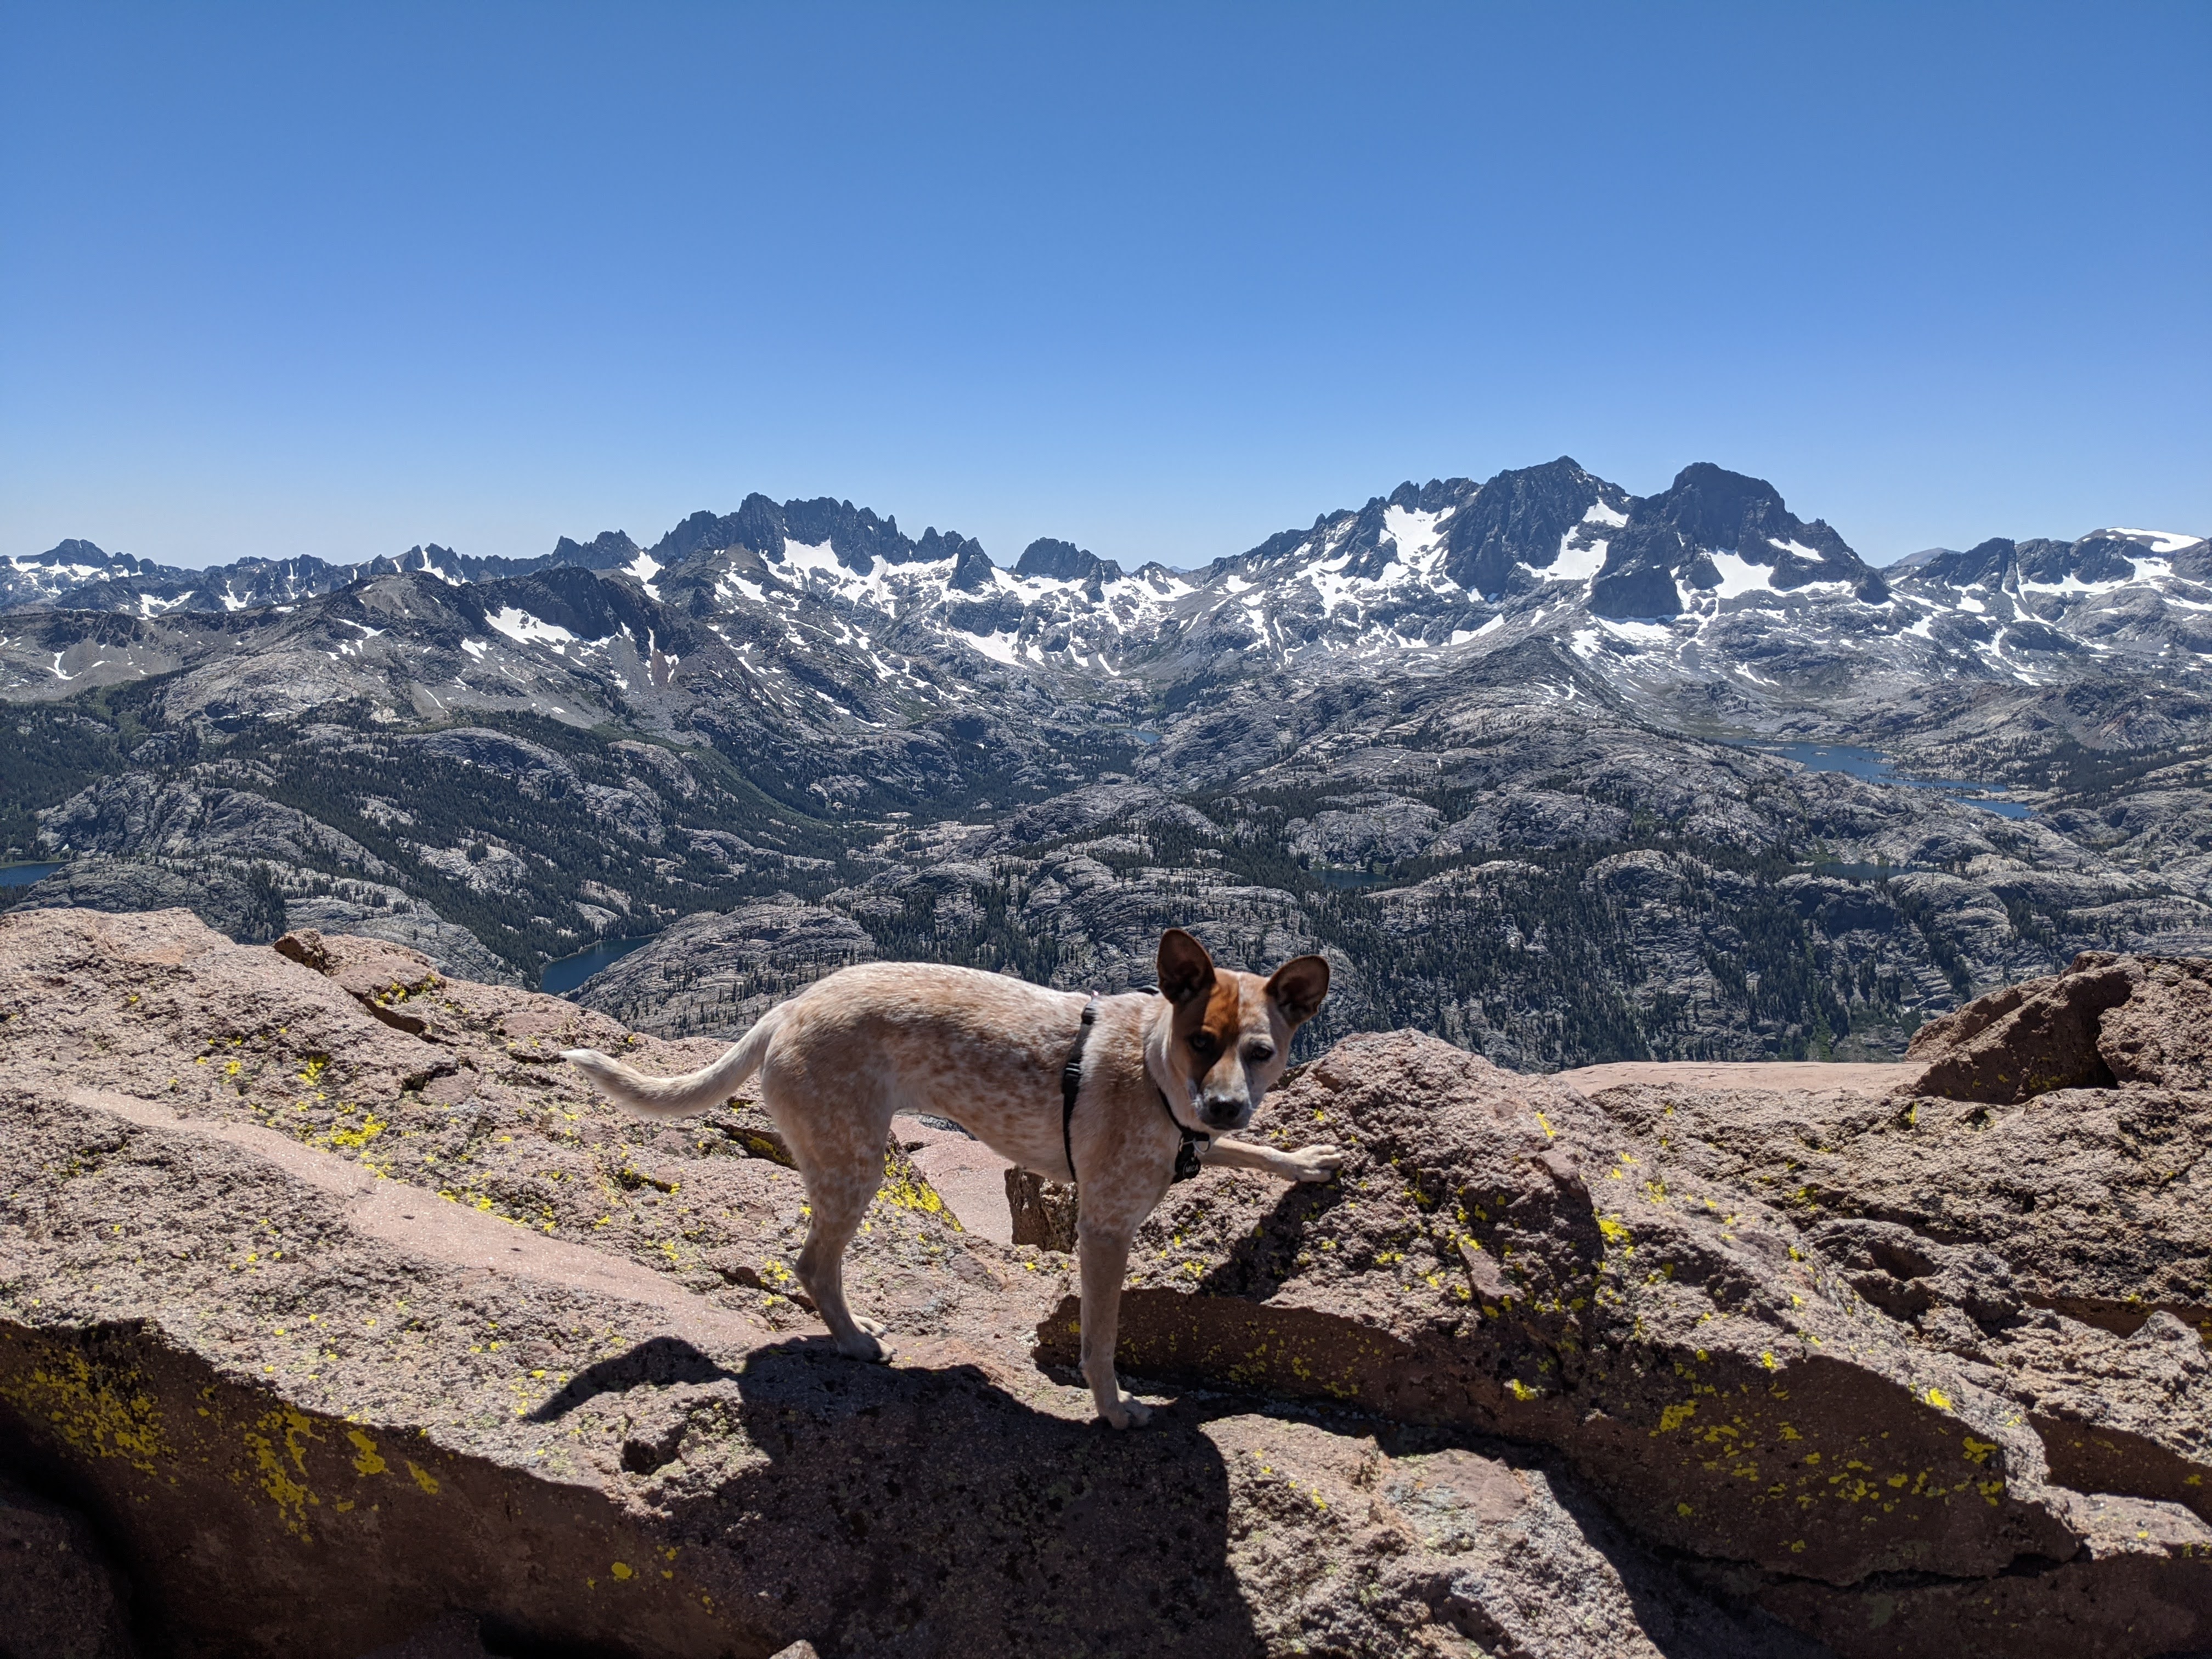 mica on the summit of San Joaquin Mountain